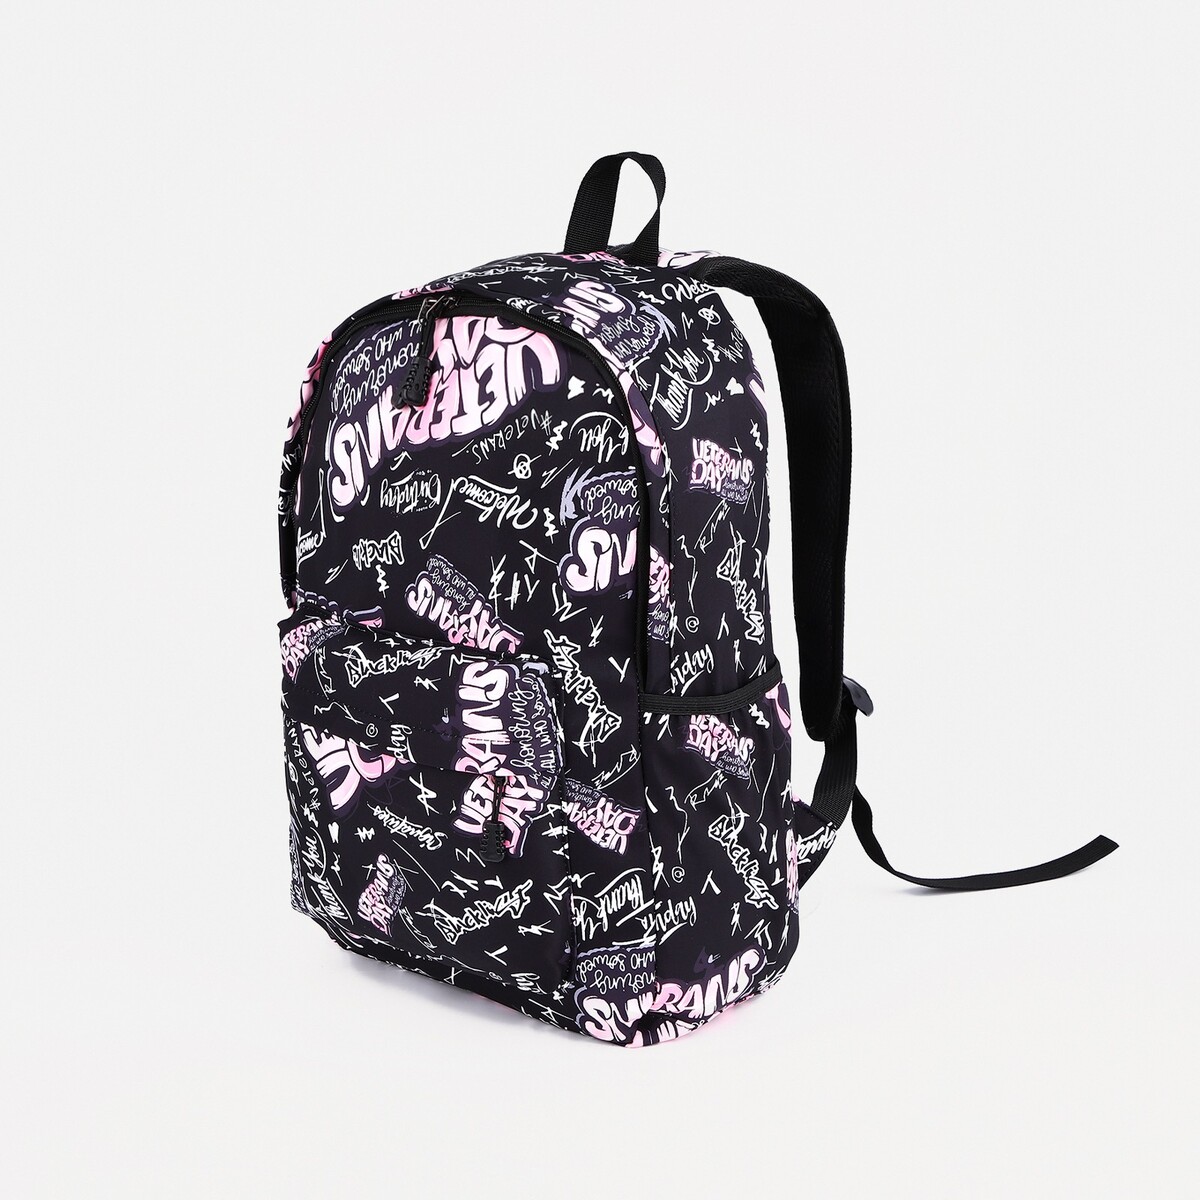 Рюкзак на молнии, 3 наружных кармана, цвет розовый/черный рюкзак школьный из текстиля на молнии 3 кармана розовый